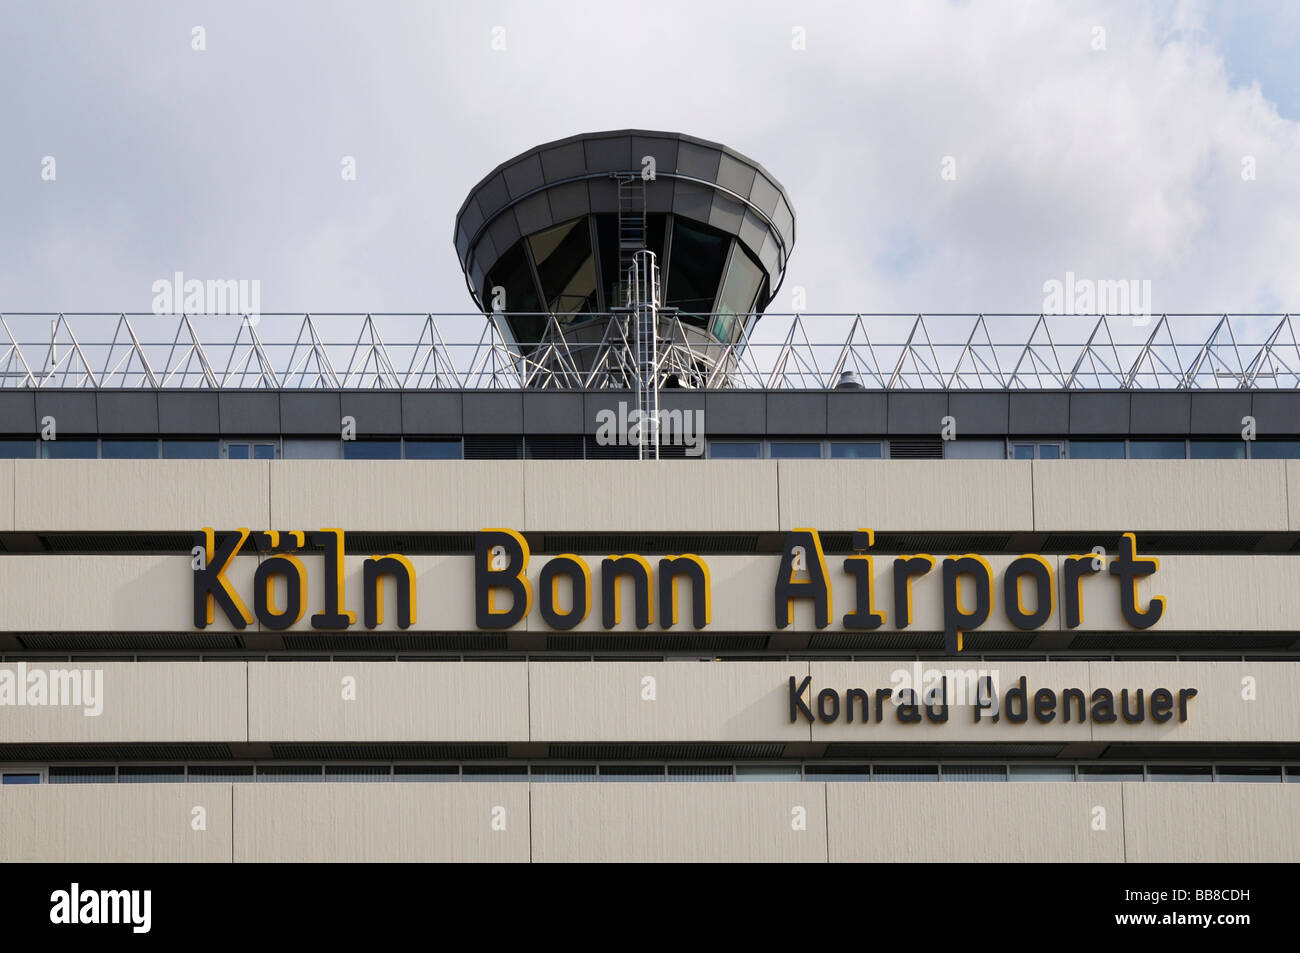 Turm und Hauptgebäude mit dem schreiben, Flughafen, Köln Bonn Airport Konrad Adenauer, North Rhine-Westphalia, Deutschland Stockfoto